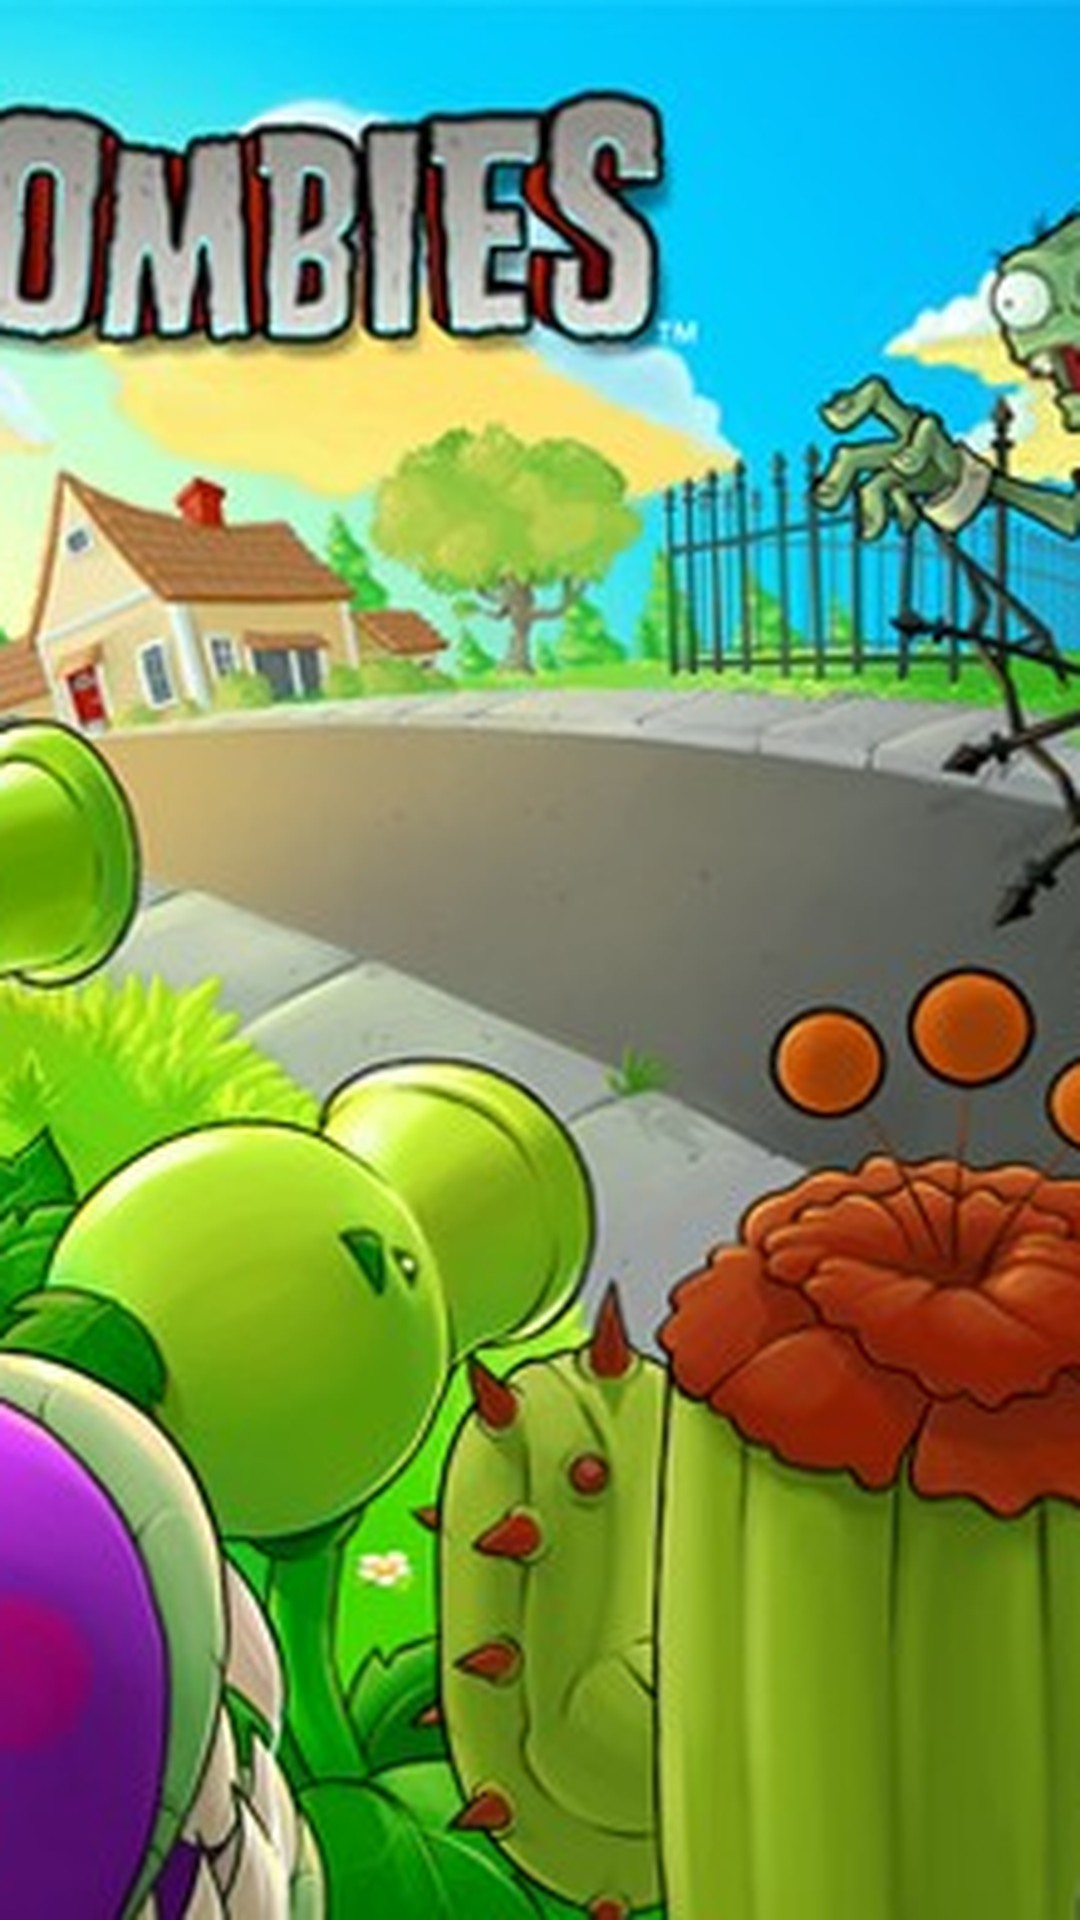 G1 - 'Plants vs. Zombies Adventures' é novo jogo da série para o Facebook -  notícias em Games